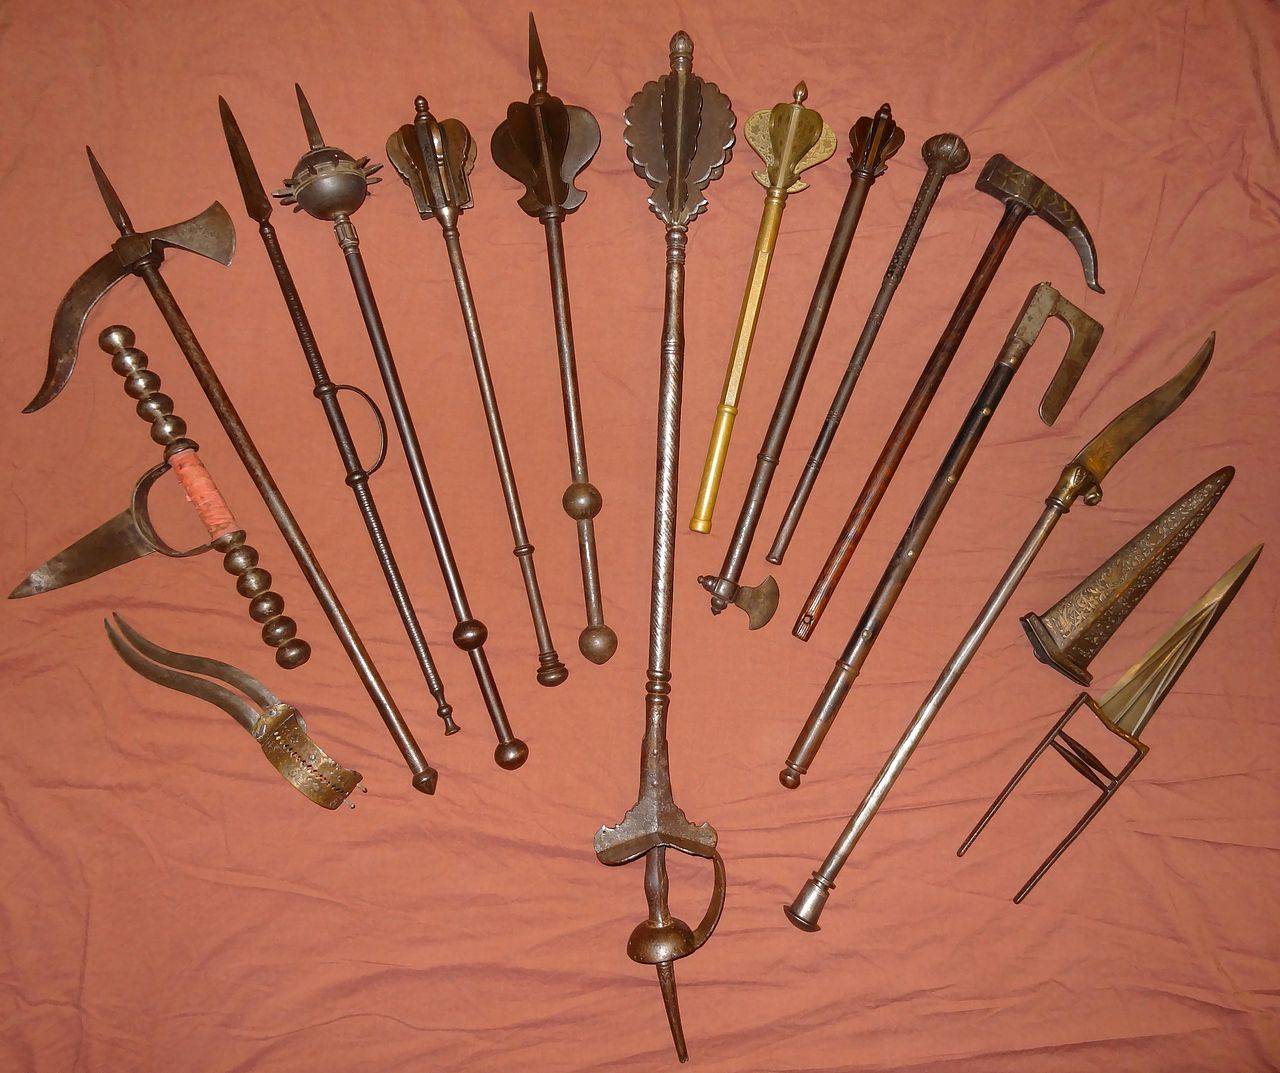 Метательное оружие: старинное ручное, древнее холодное, спортивное, средневековое, индийское, испанское, римское и японское, классификация видов